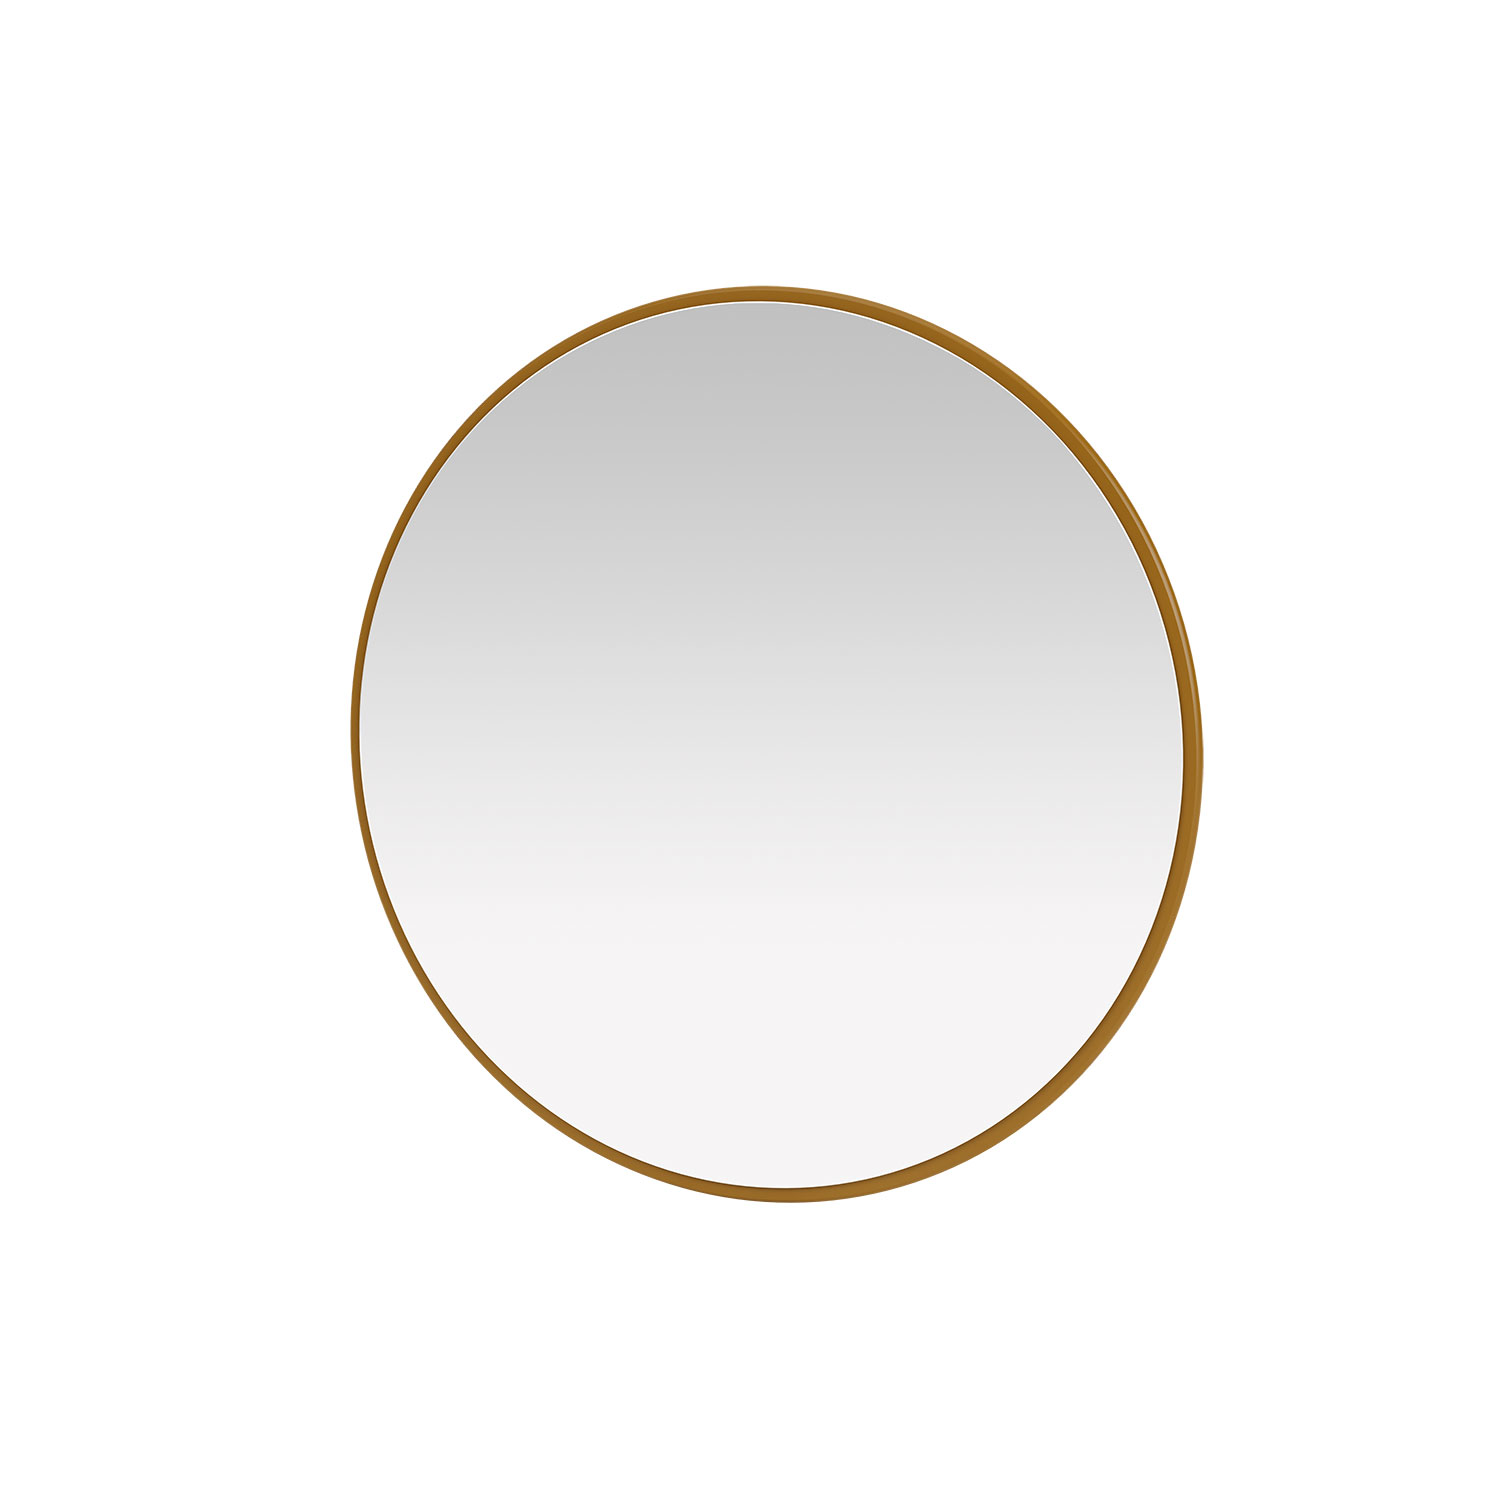 AROUND mirror, 13 colors